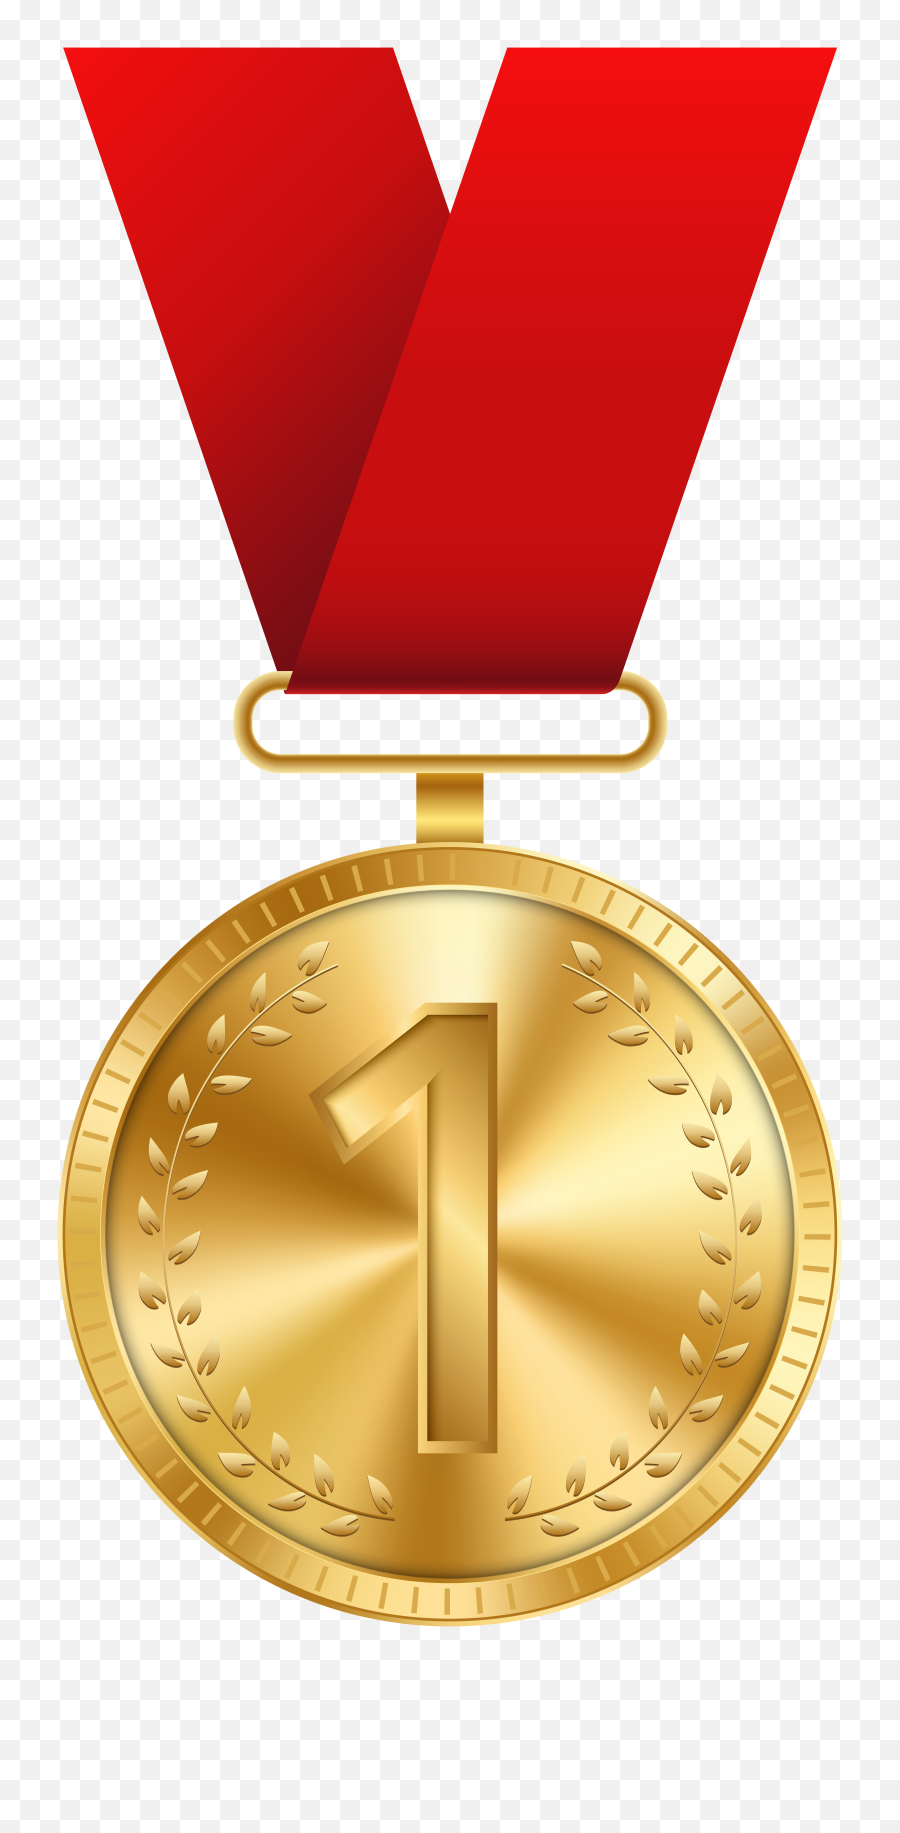 Free Medal Transparent Download - Gold Medal Clipart Png,Medallion Png